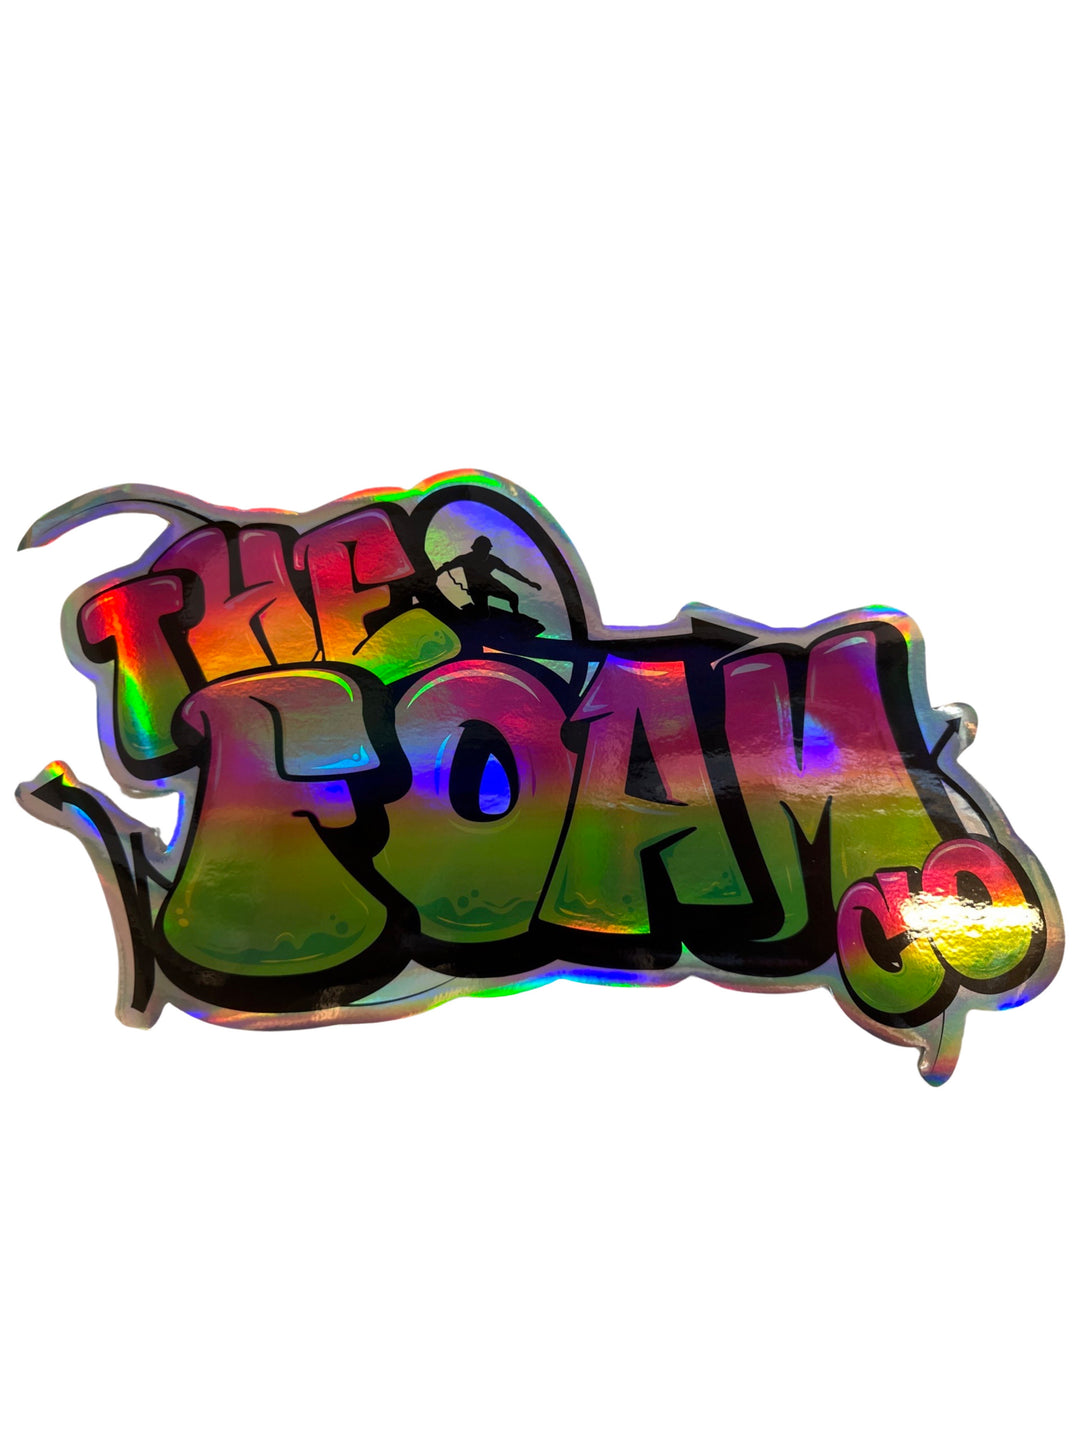 Foam Co Holographic Graffiti Sticker